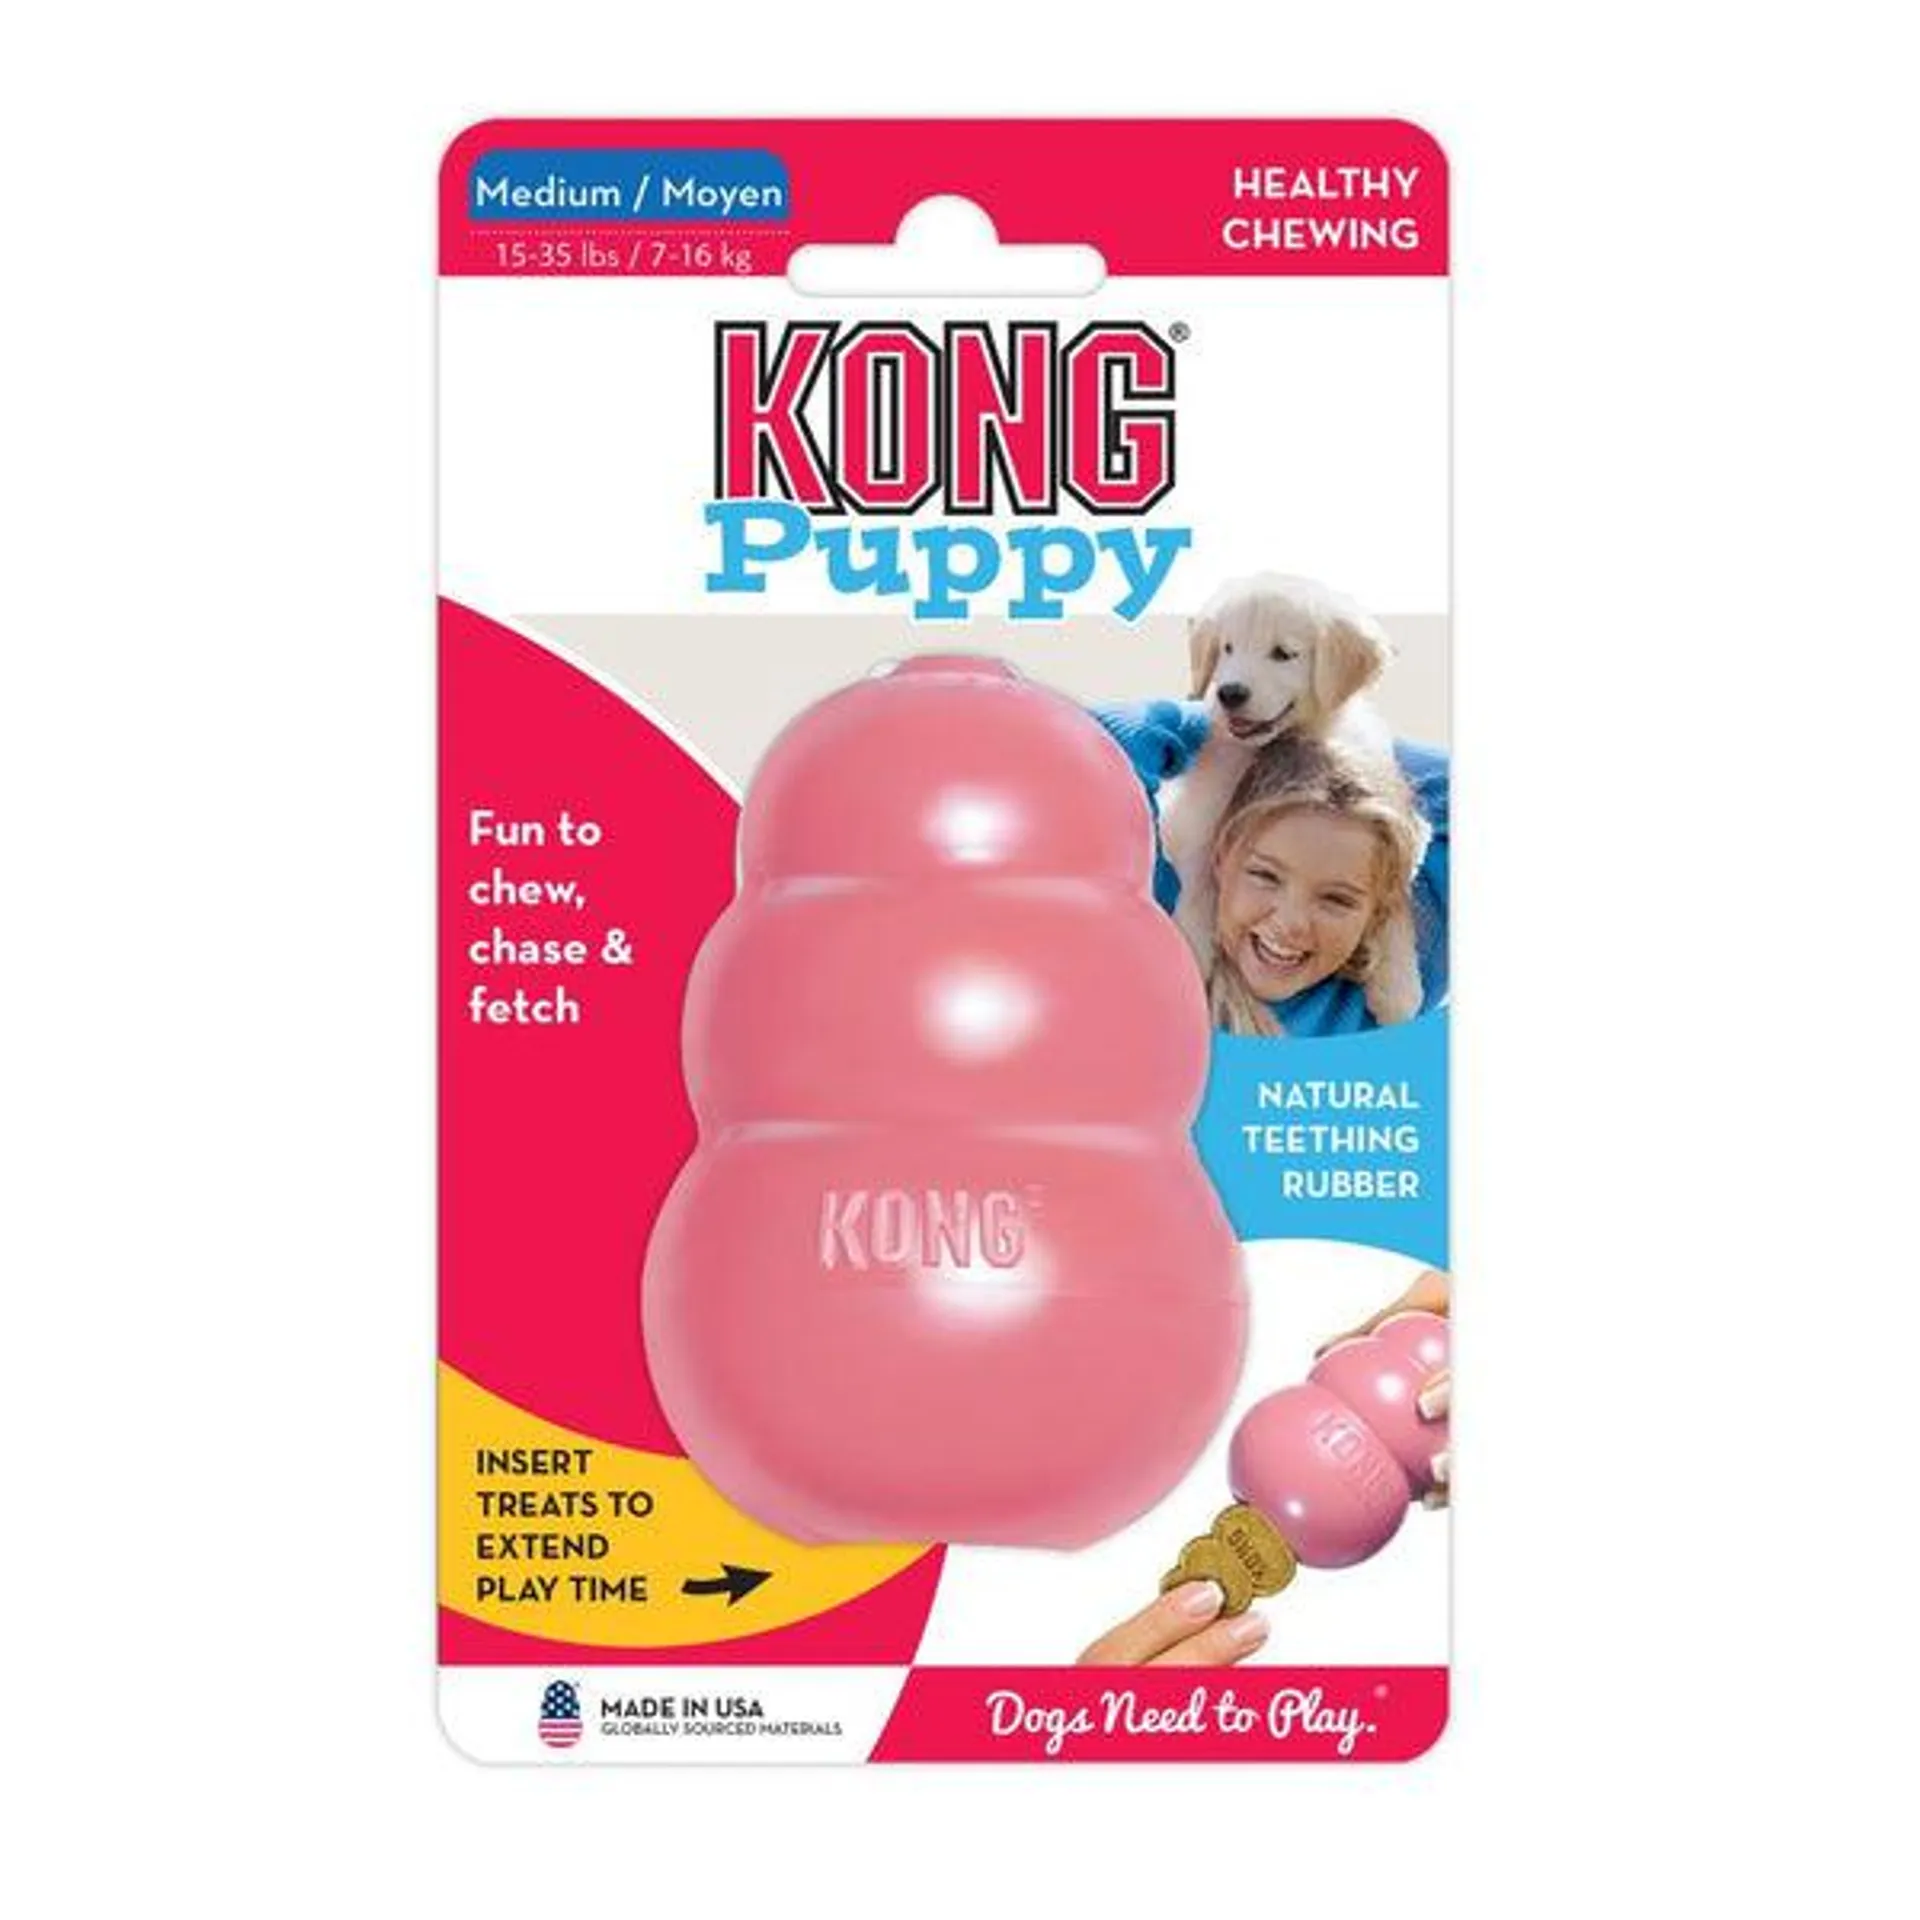 KONG - Puppy (Medium)